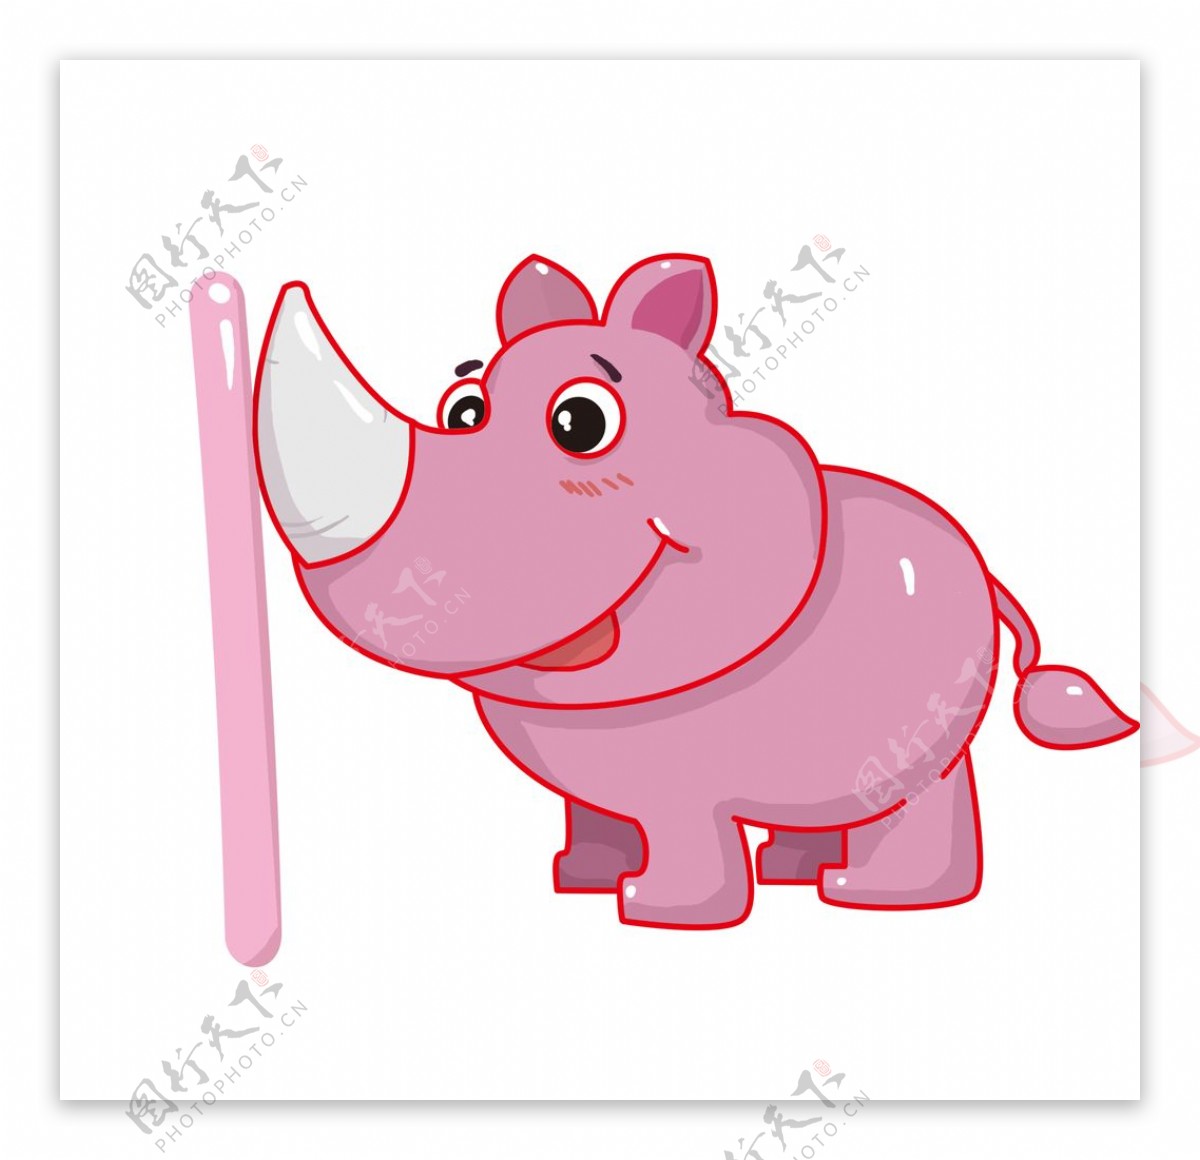 粉色可爱的犀牛插画图片